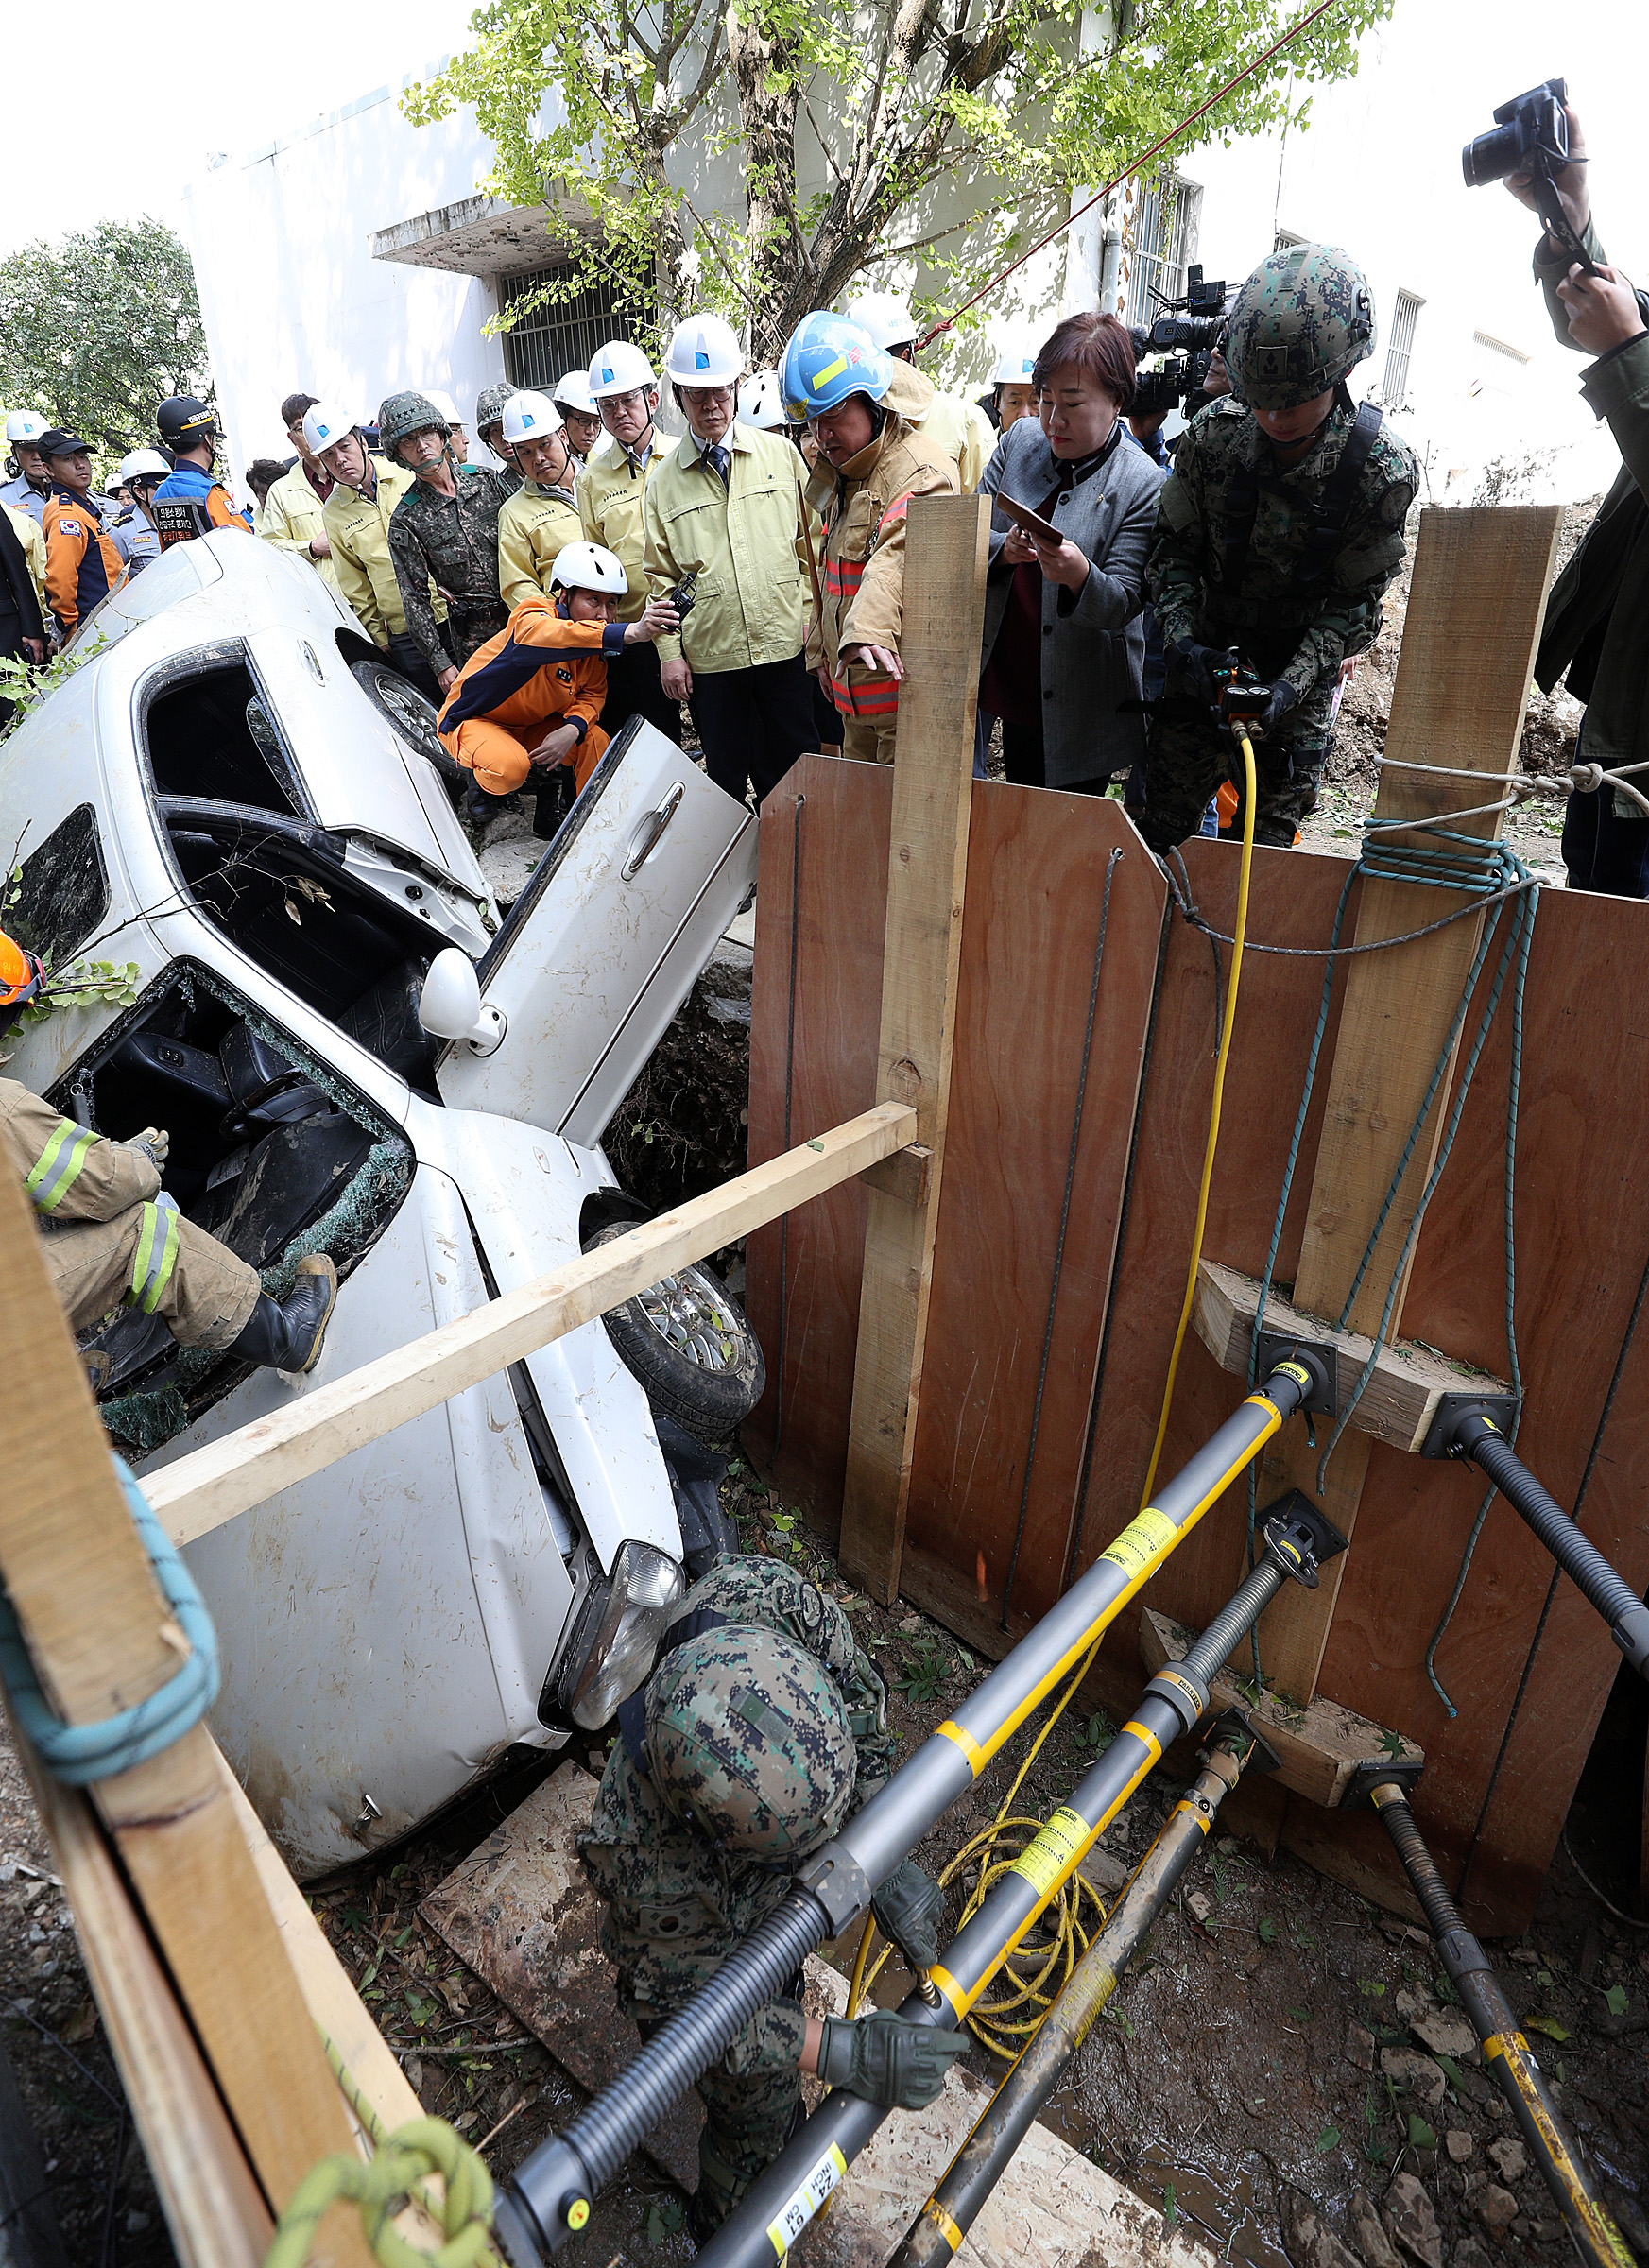 경기도 소방재난본부 소방관들과 군인들이 지진으로 인해 전복된 차량에 고립된 환자를 구조하고 있다.